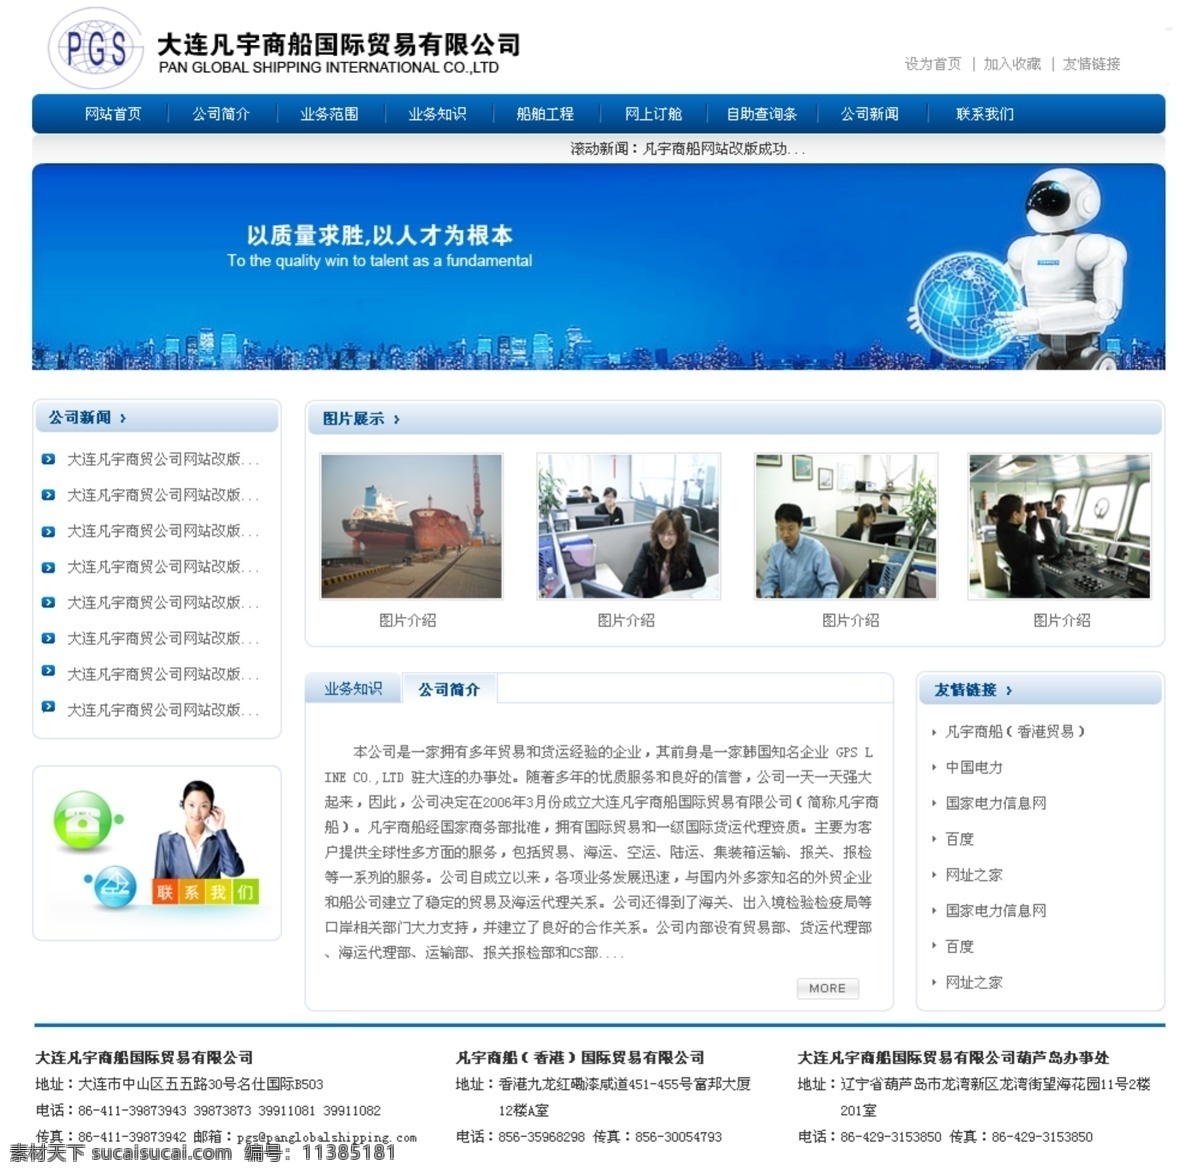 蓝色网站模板 企业网站 企业网站模板 网页模板 物流网站模板 源文件 中国网页模板 中文模版 物流 网站 模板 模板下载 psd源文件